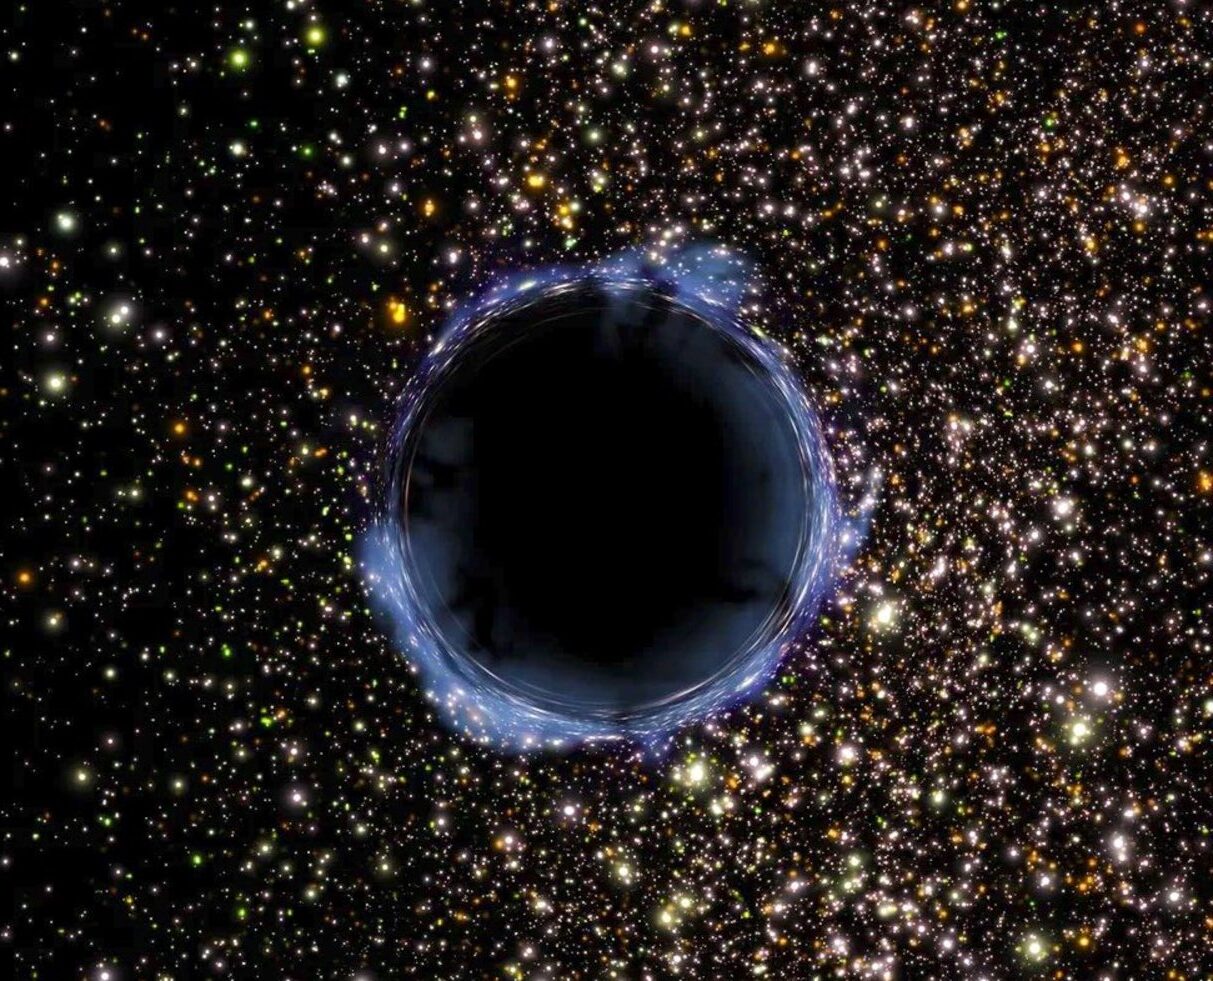 Se acaba de descubrir un enorme agujero negro estelar en la Vía Láctea